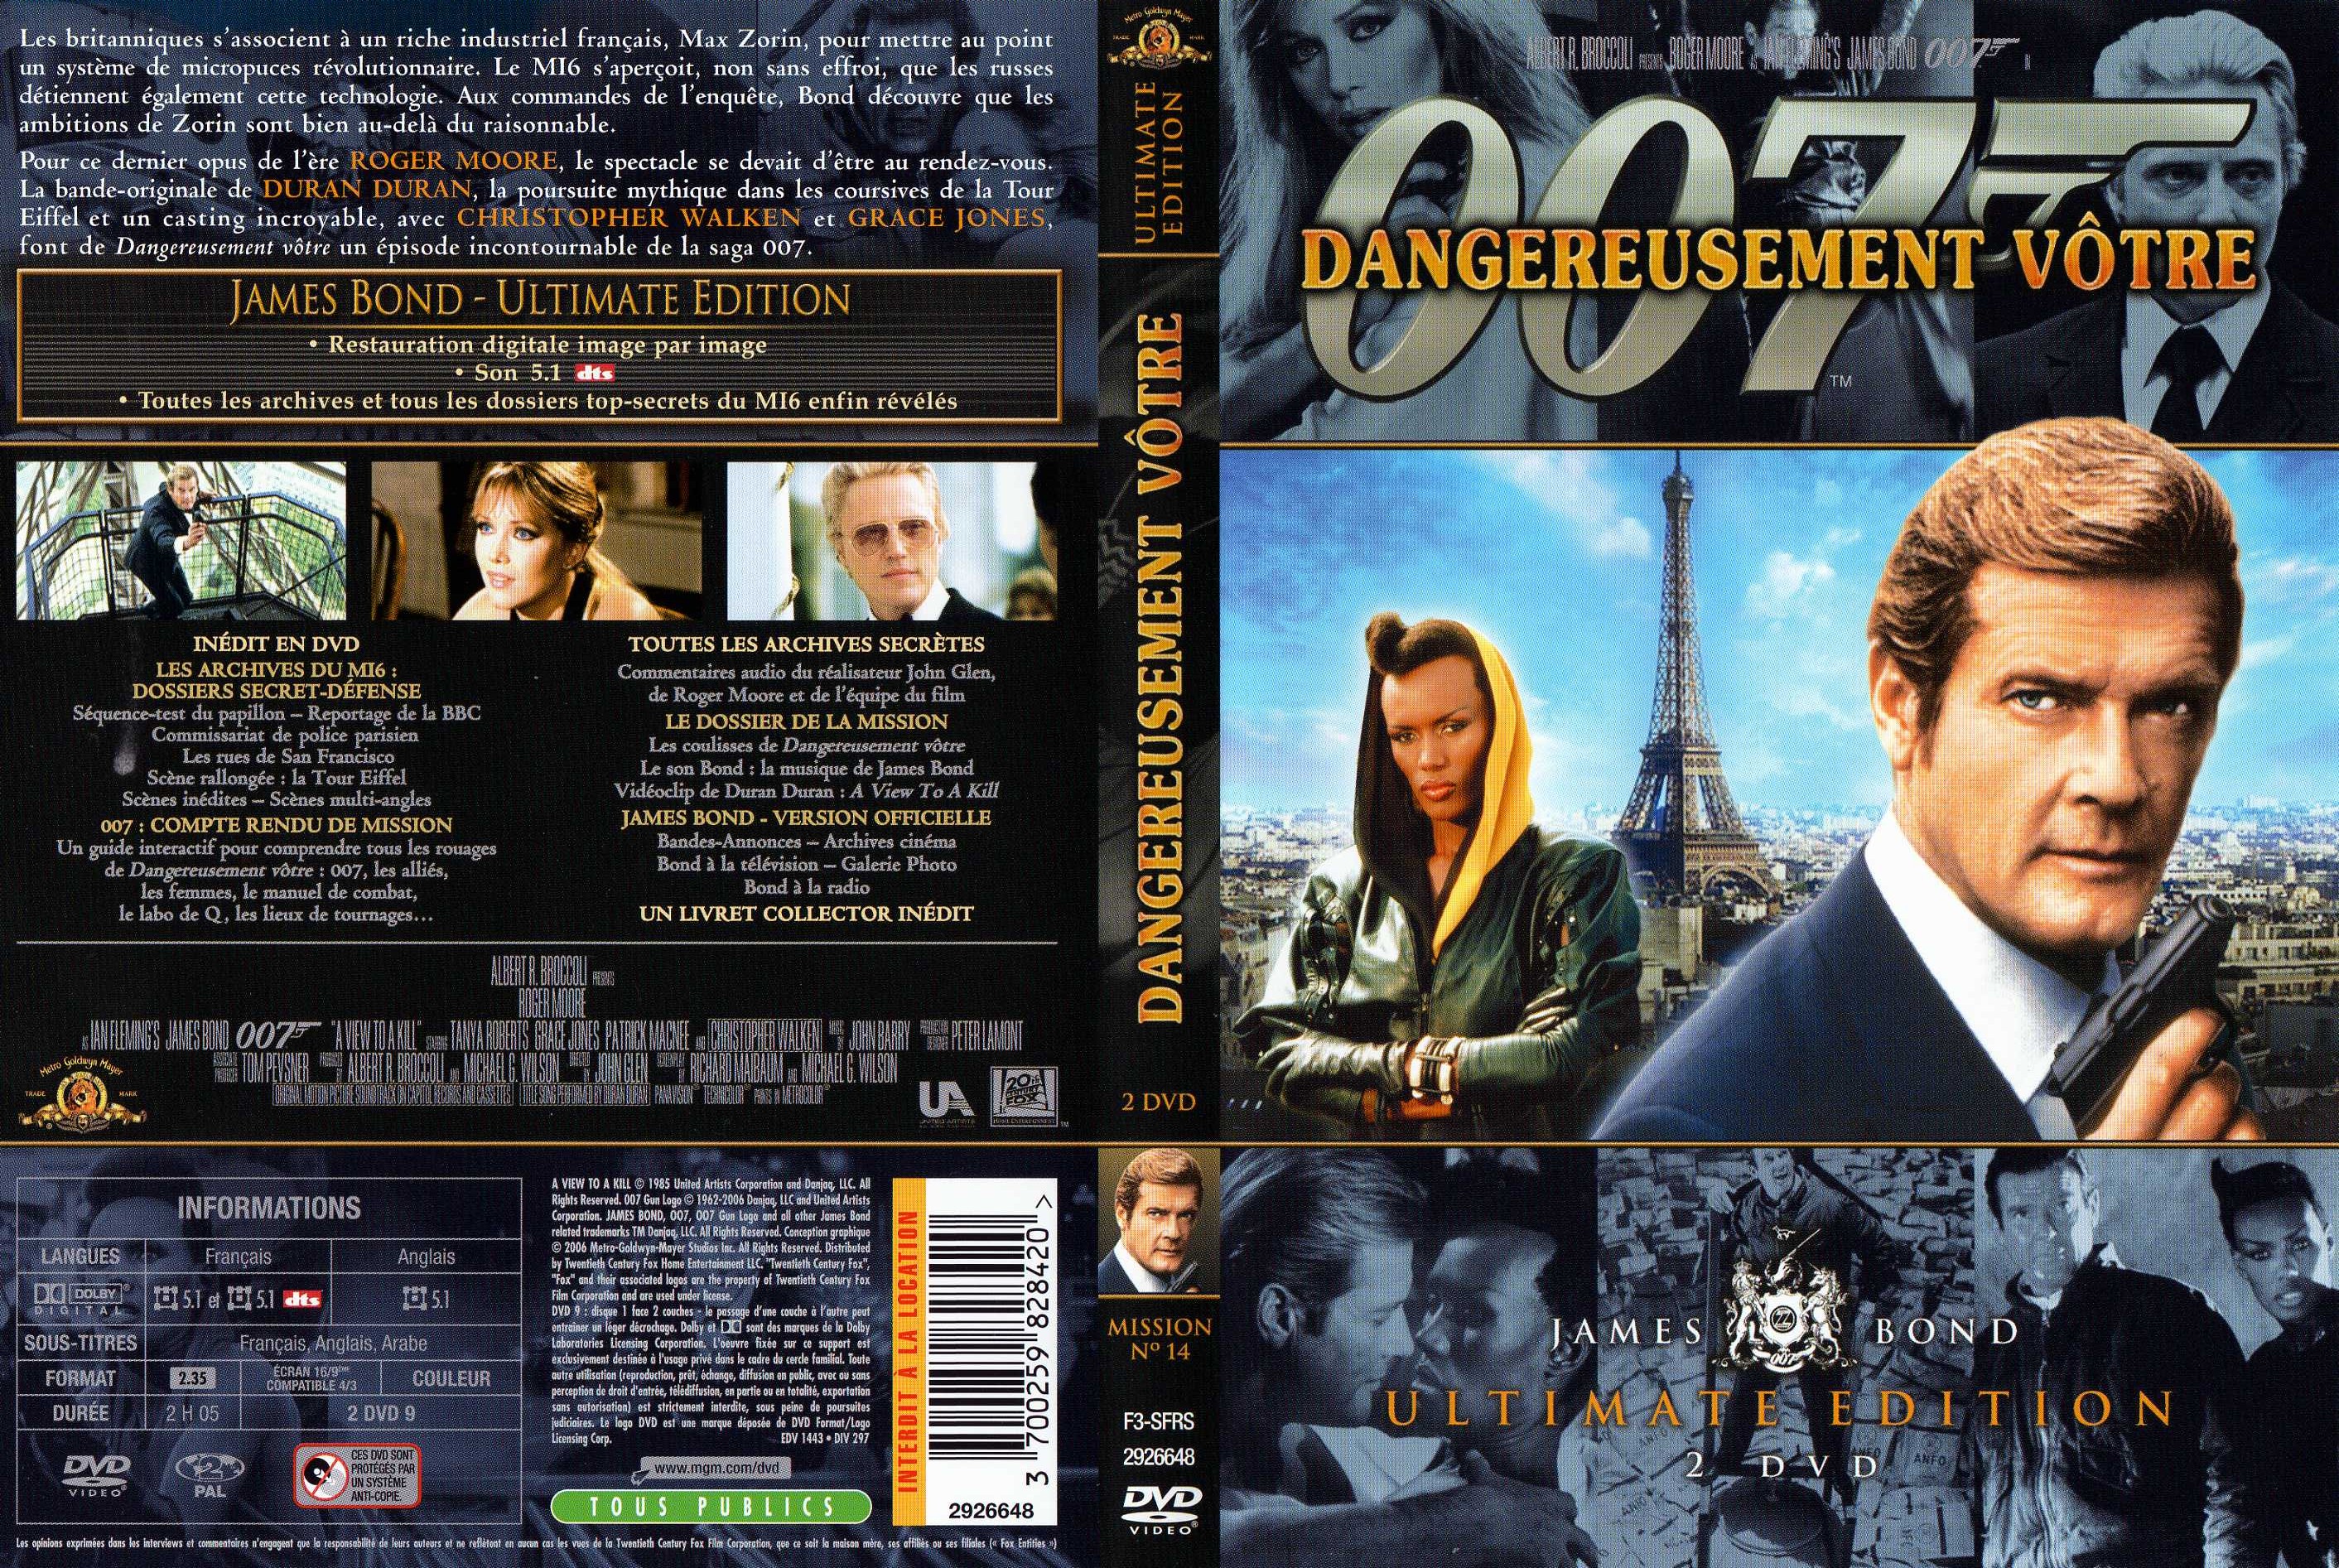 Jaquette DVD James Bond 007 Dangereusement votre Ultimate Edition